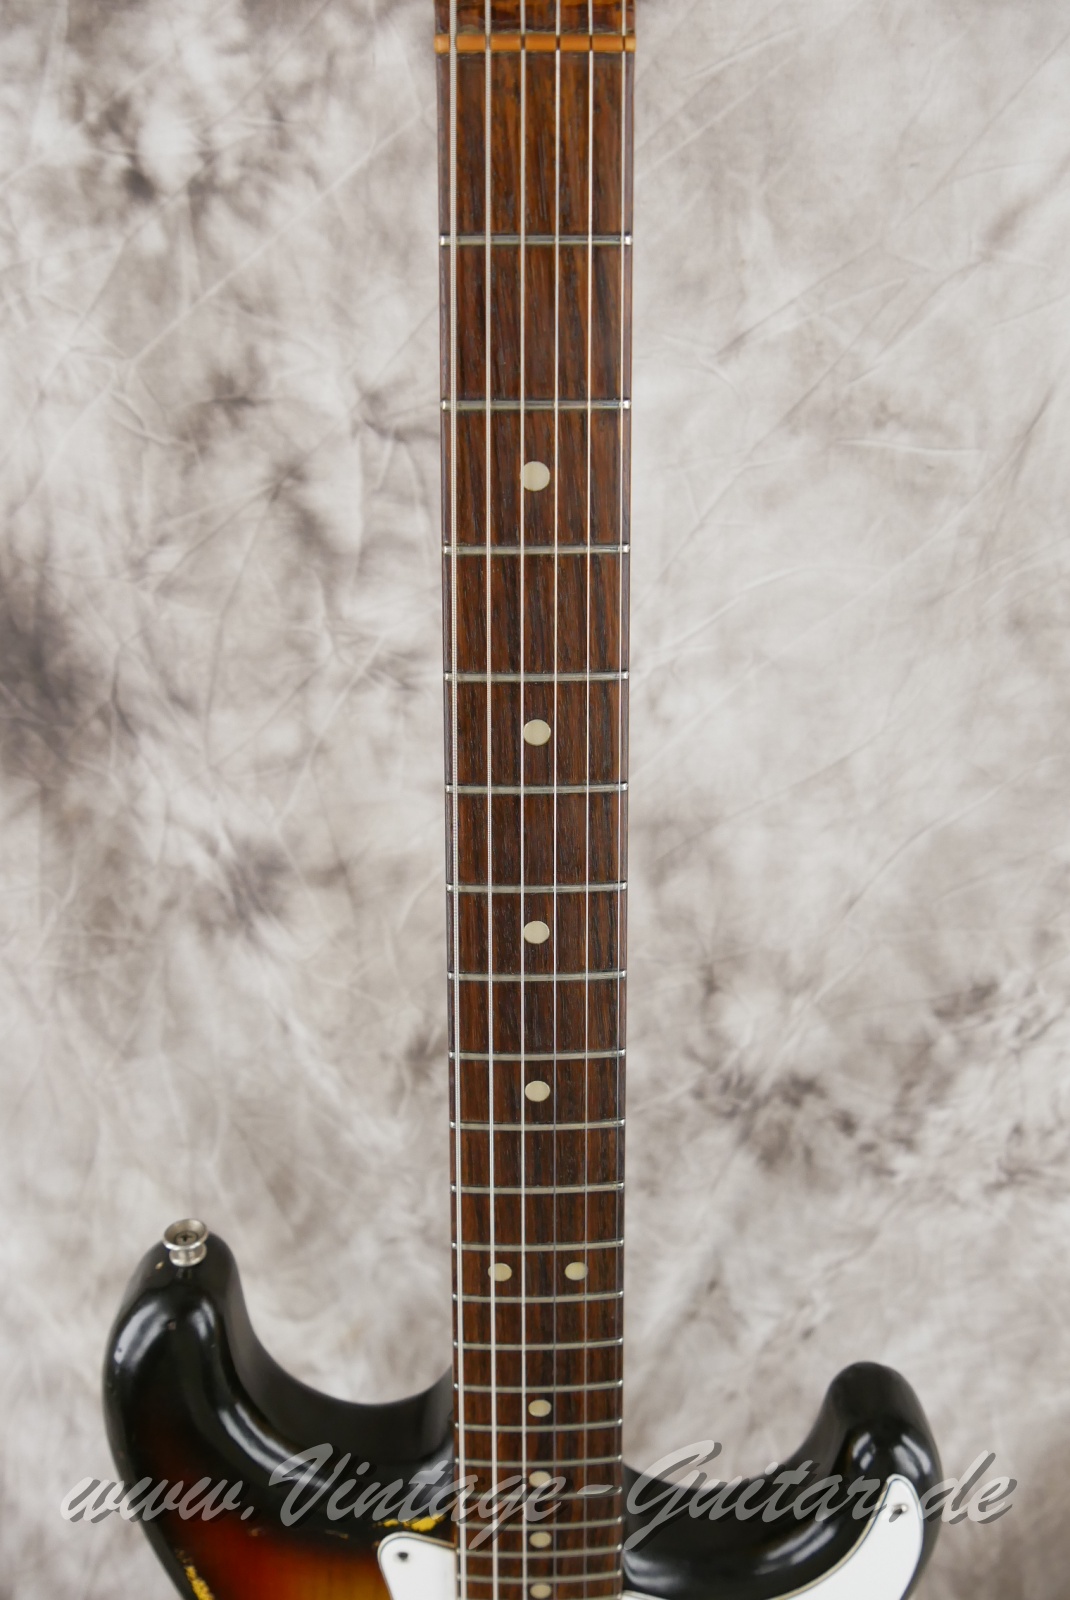 Fender-Stratocaster-Hardtail-1974c.-sunburst-005.jpg